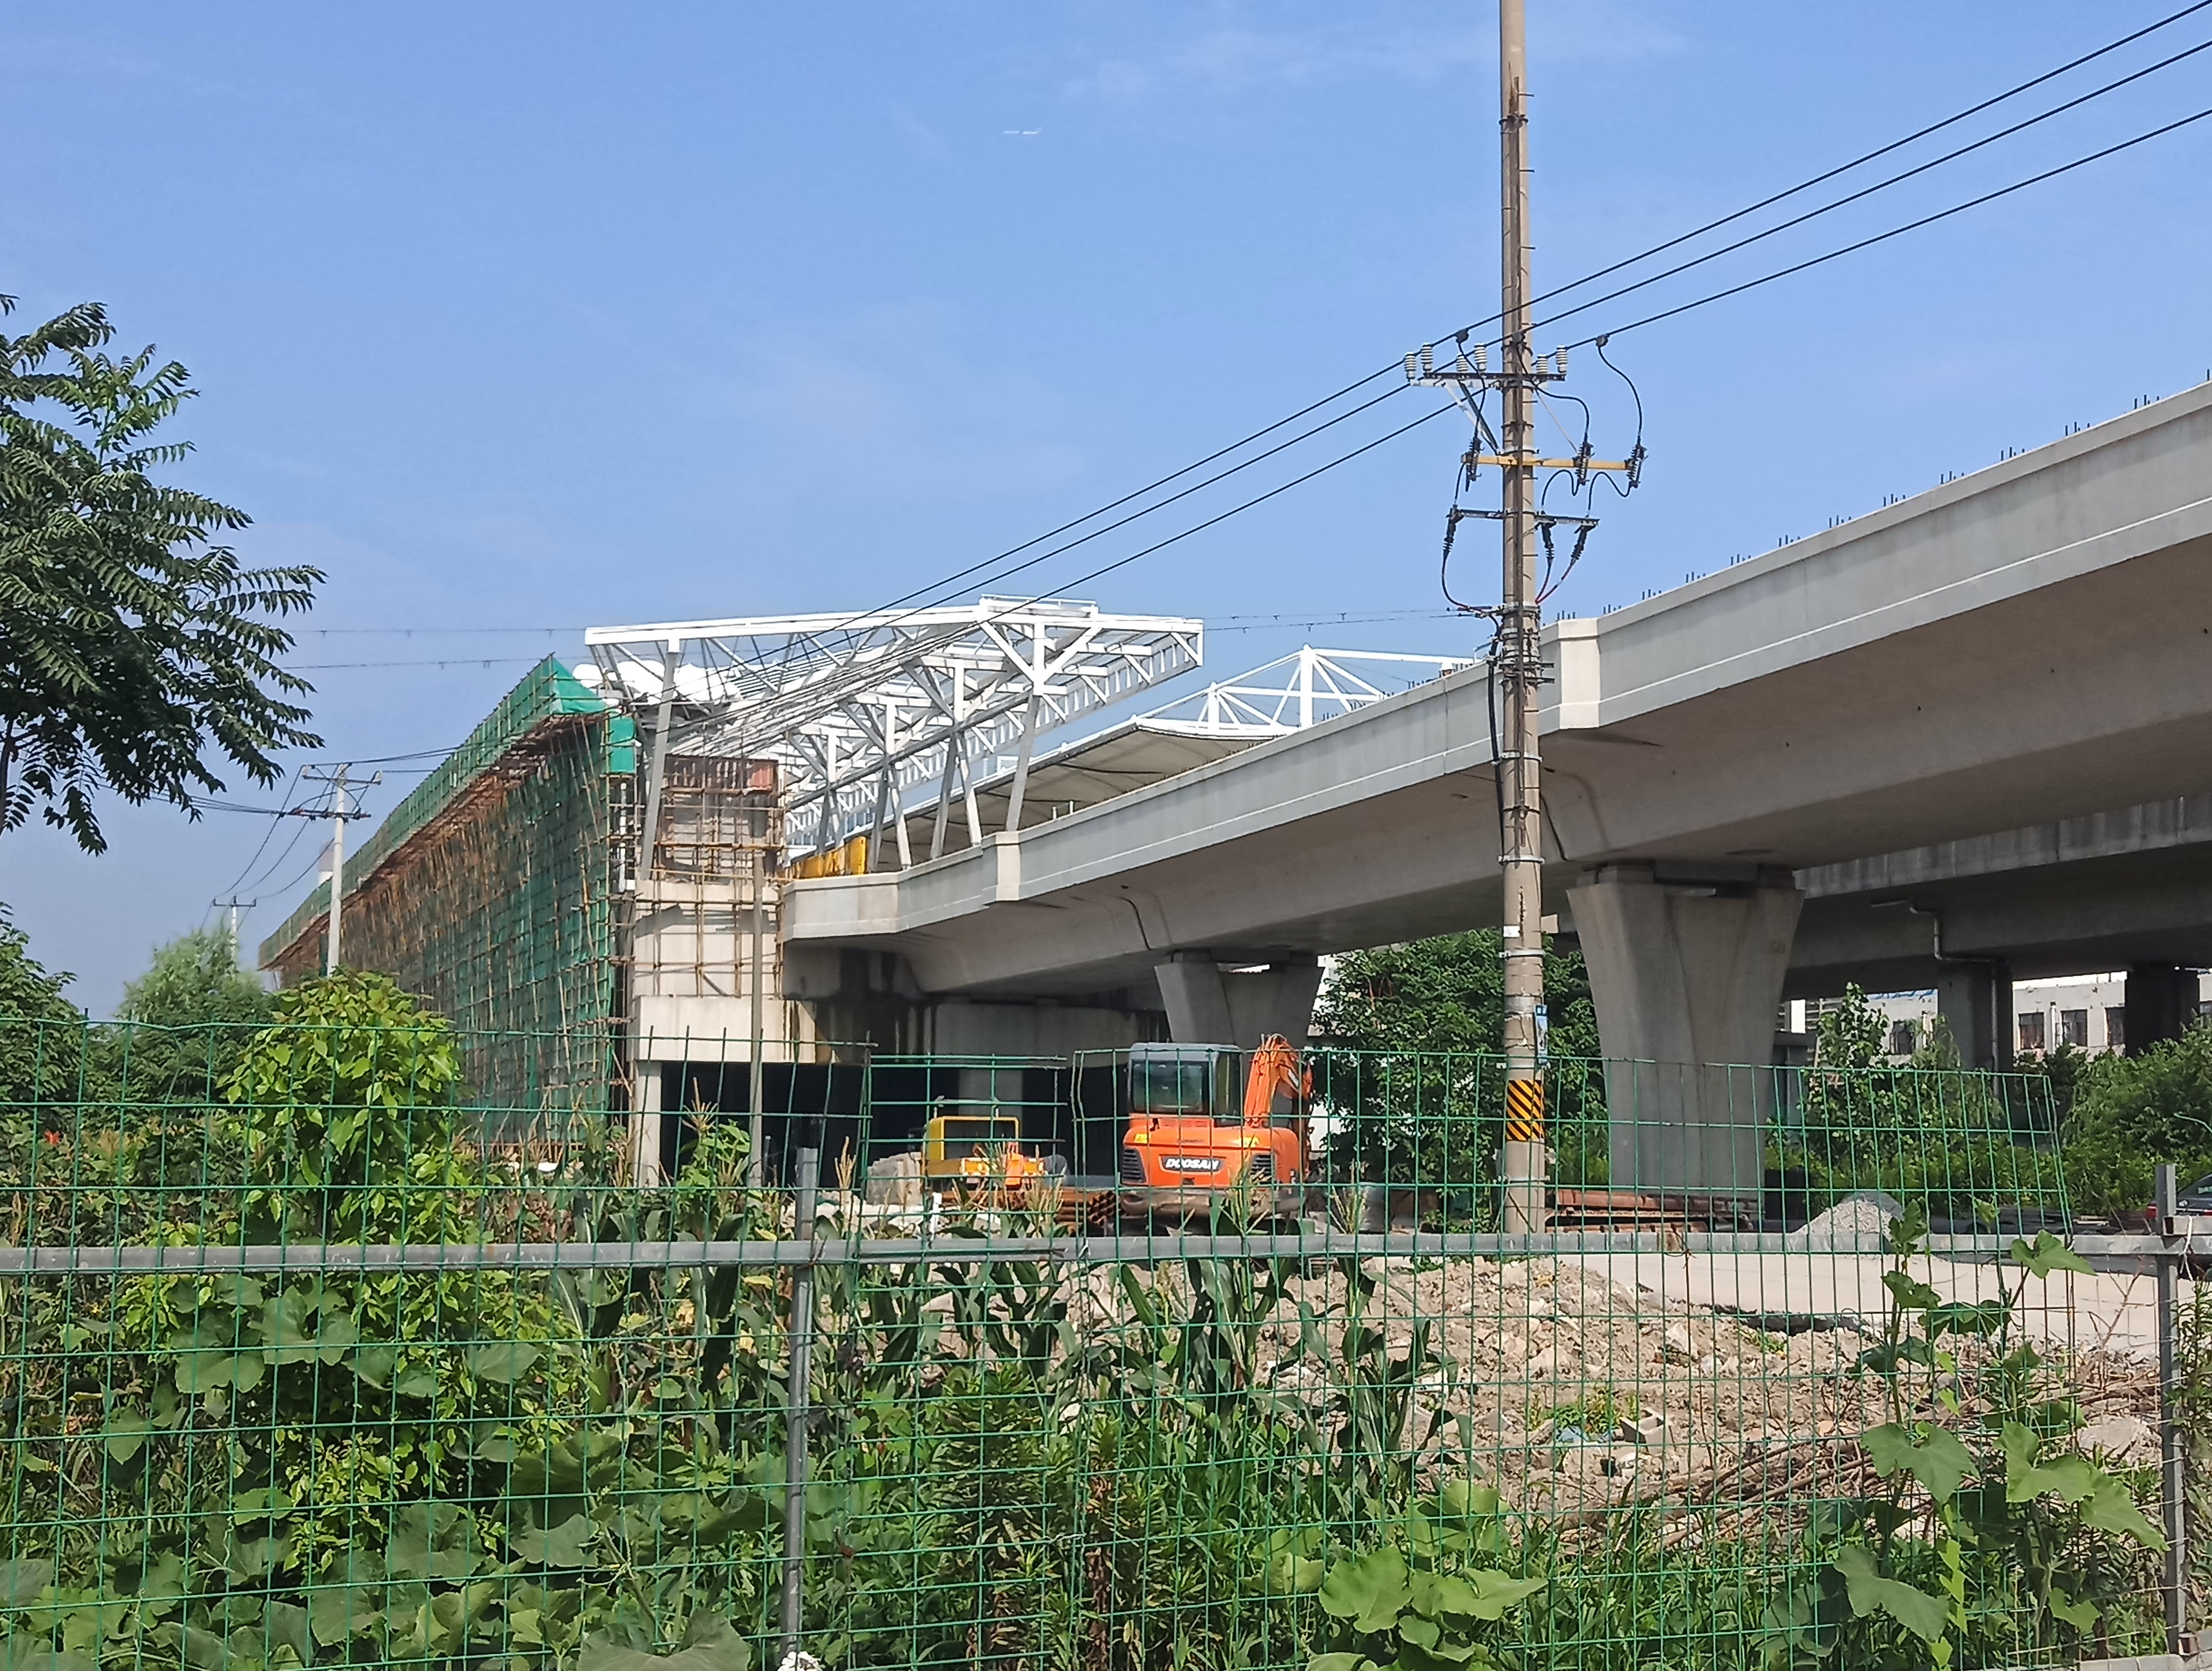 上海地铁10号线东延伸已全贯通:让浦东新区北部的交通体系完整